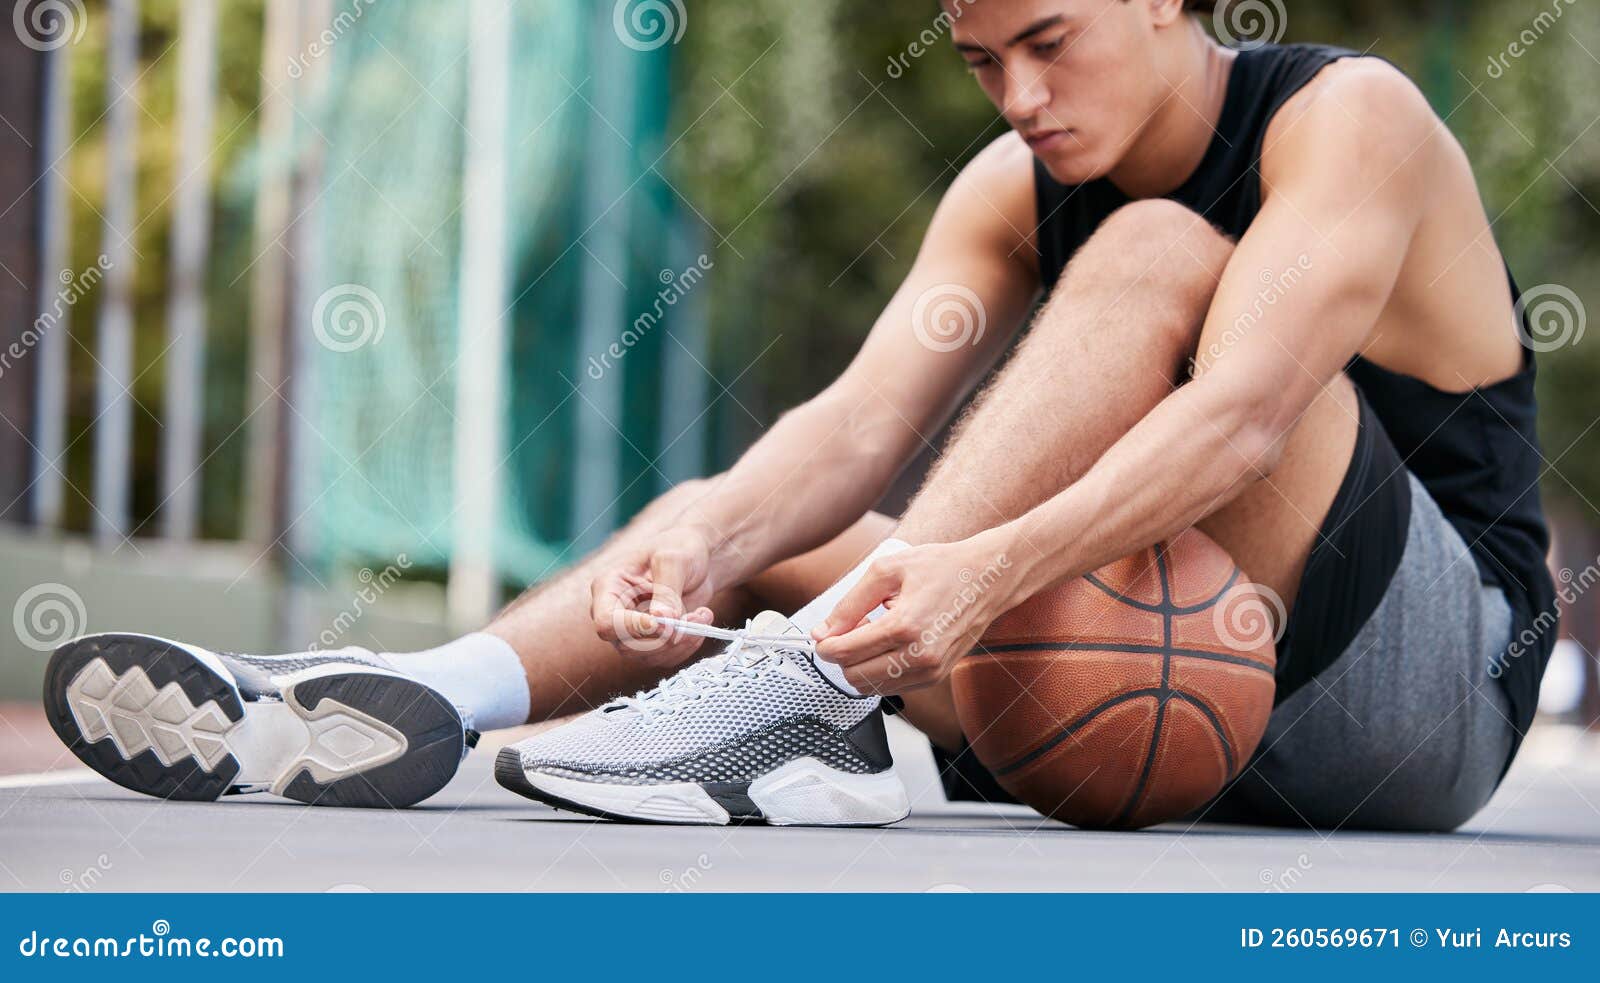 Tiro de estúdio do jogo de um jogador de basquete contra um fundo